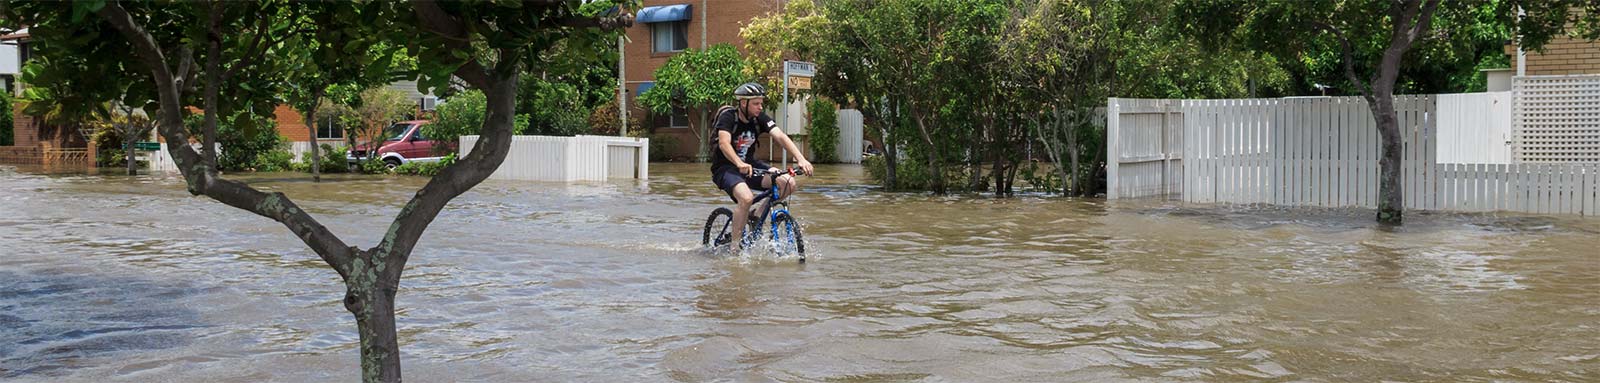 Boy cycling through flood waters